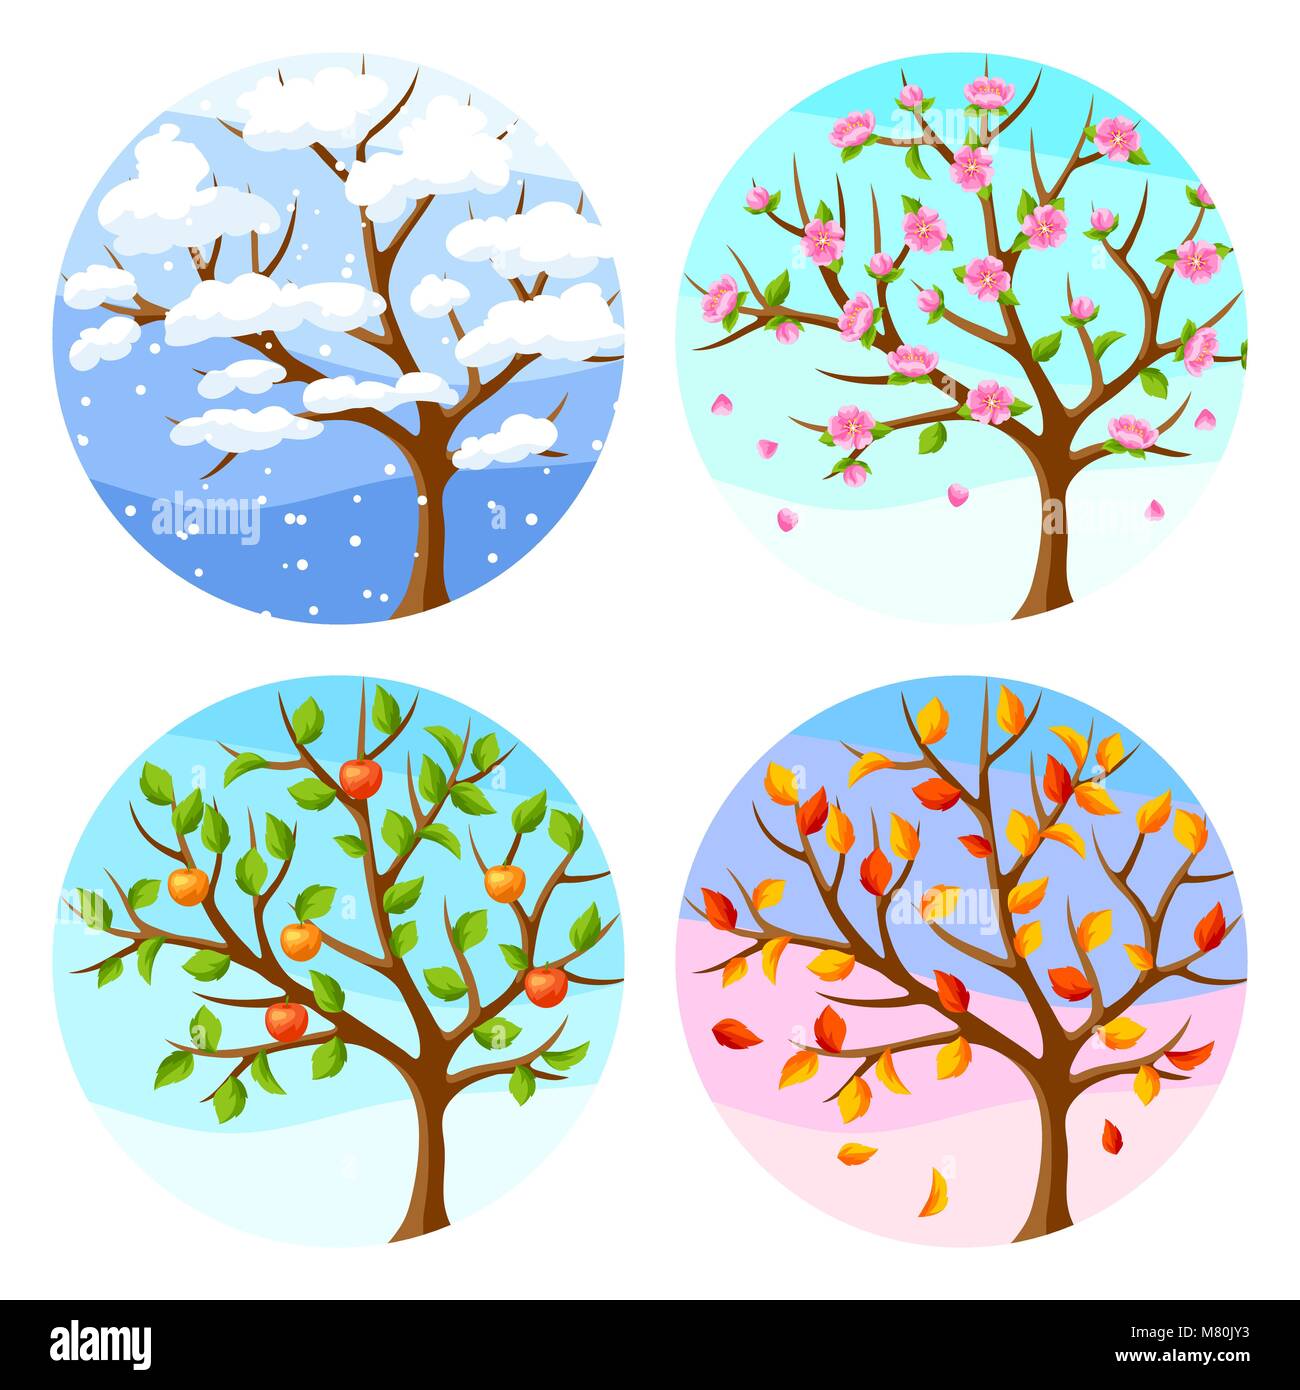 Vier Jahreszeiten. Abbildung: Baum und Landschaft im Winter, Frühling, Sommer, Herbst. Stock Vektor